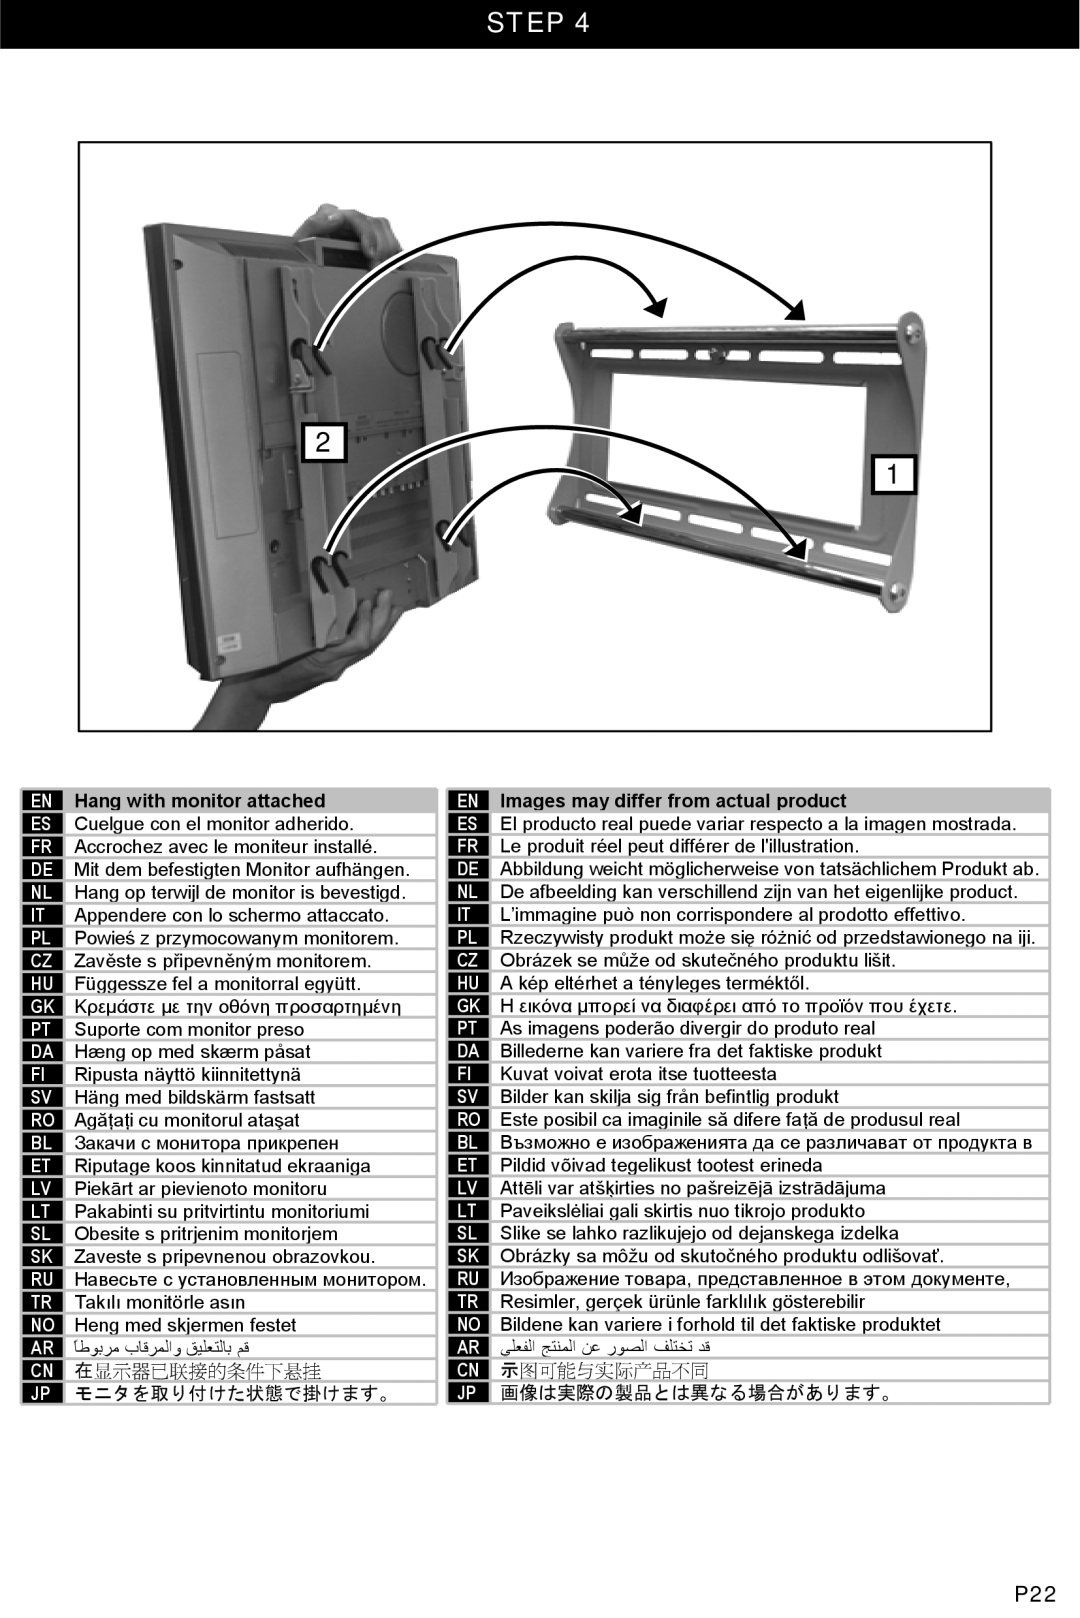 Omnimount U2-F, OM10044 manual Step, 在显示器已联接的条件下悬挂, モニタを取り付けた状態で掛けます。, 示图可能与实际产品不同, 画像は実際の製品とは異なる場合があります。 